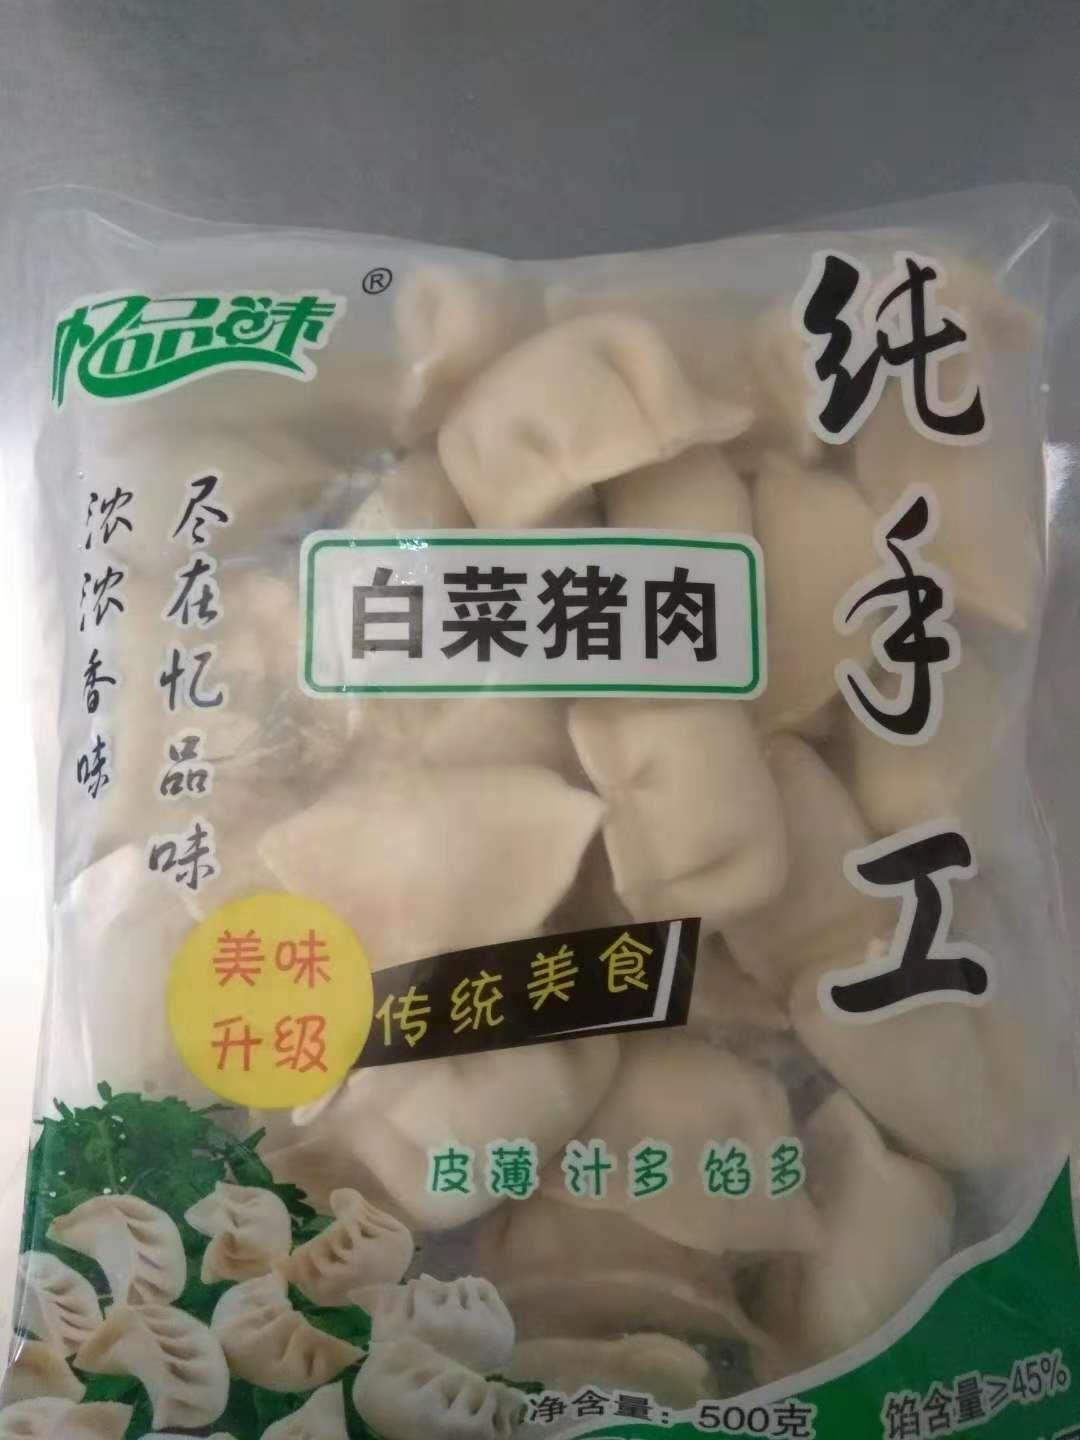 安庆纯手工饺子生产厂家 泗阳县忆品味食品有限公司